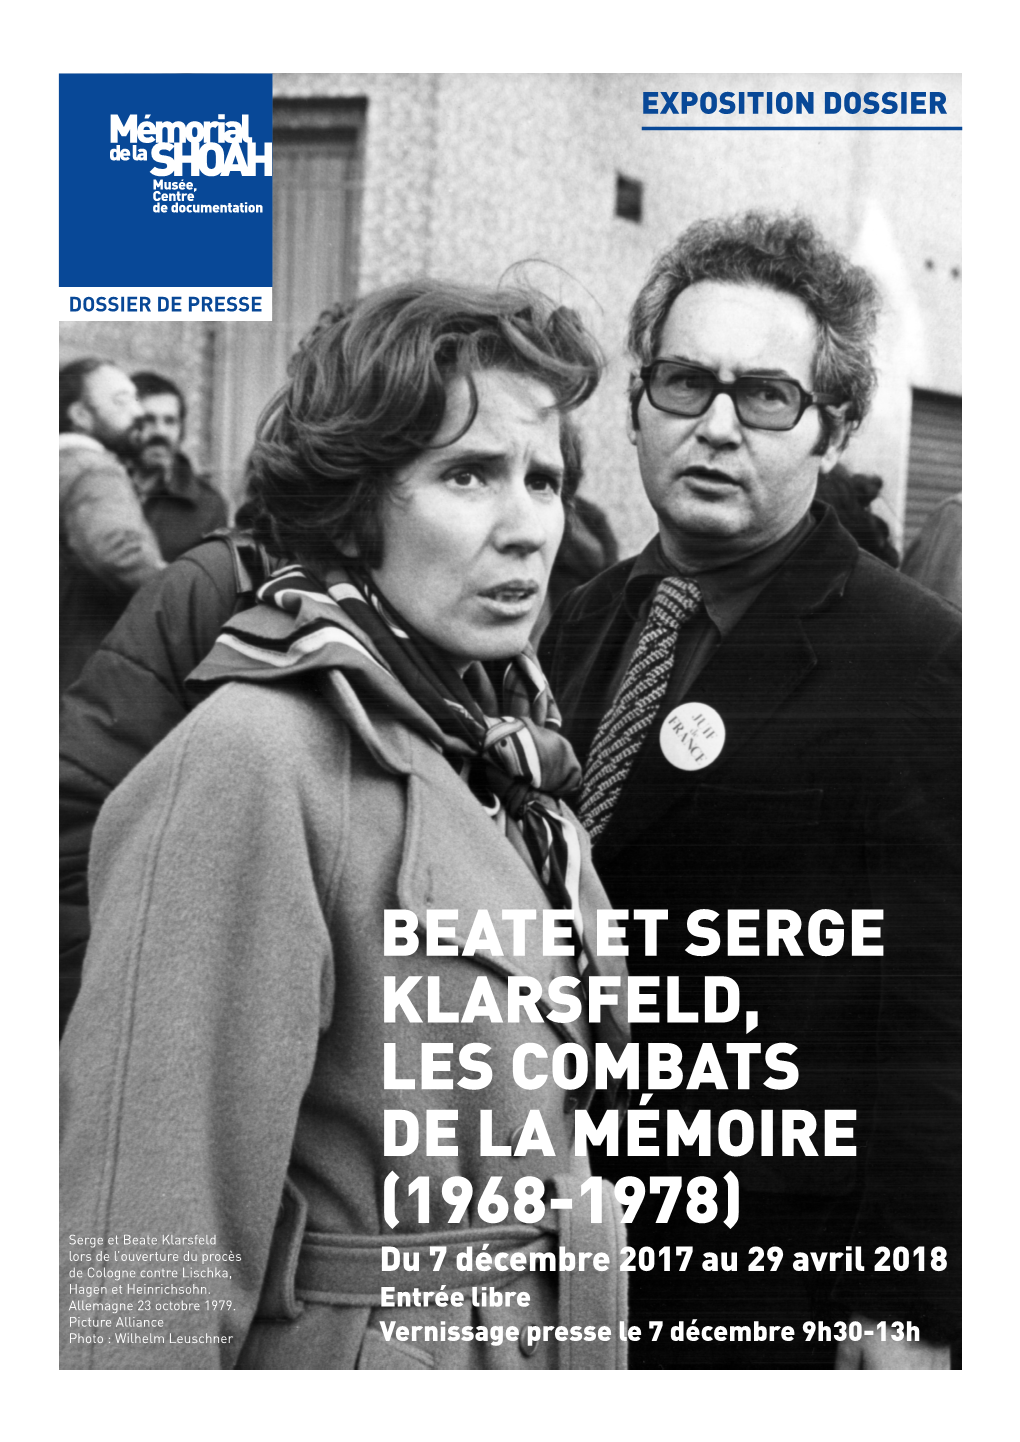 Beate Et Serge Klarsfeld, Les Combats De La Mémoire (1968-1978)